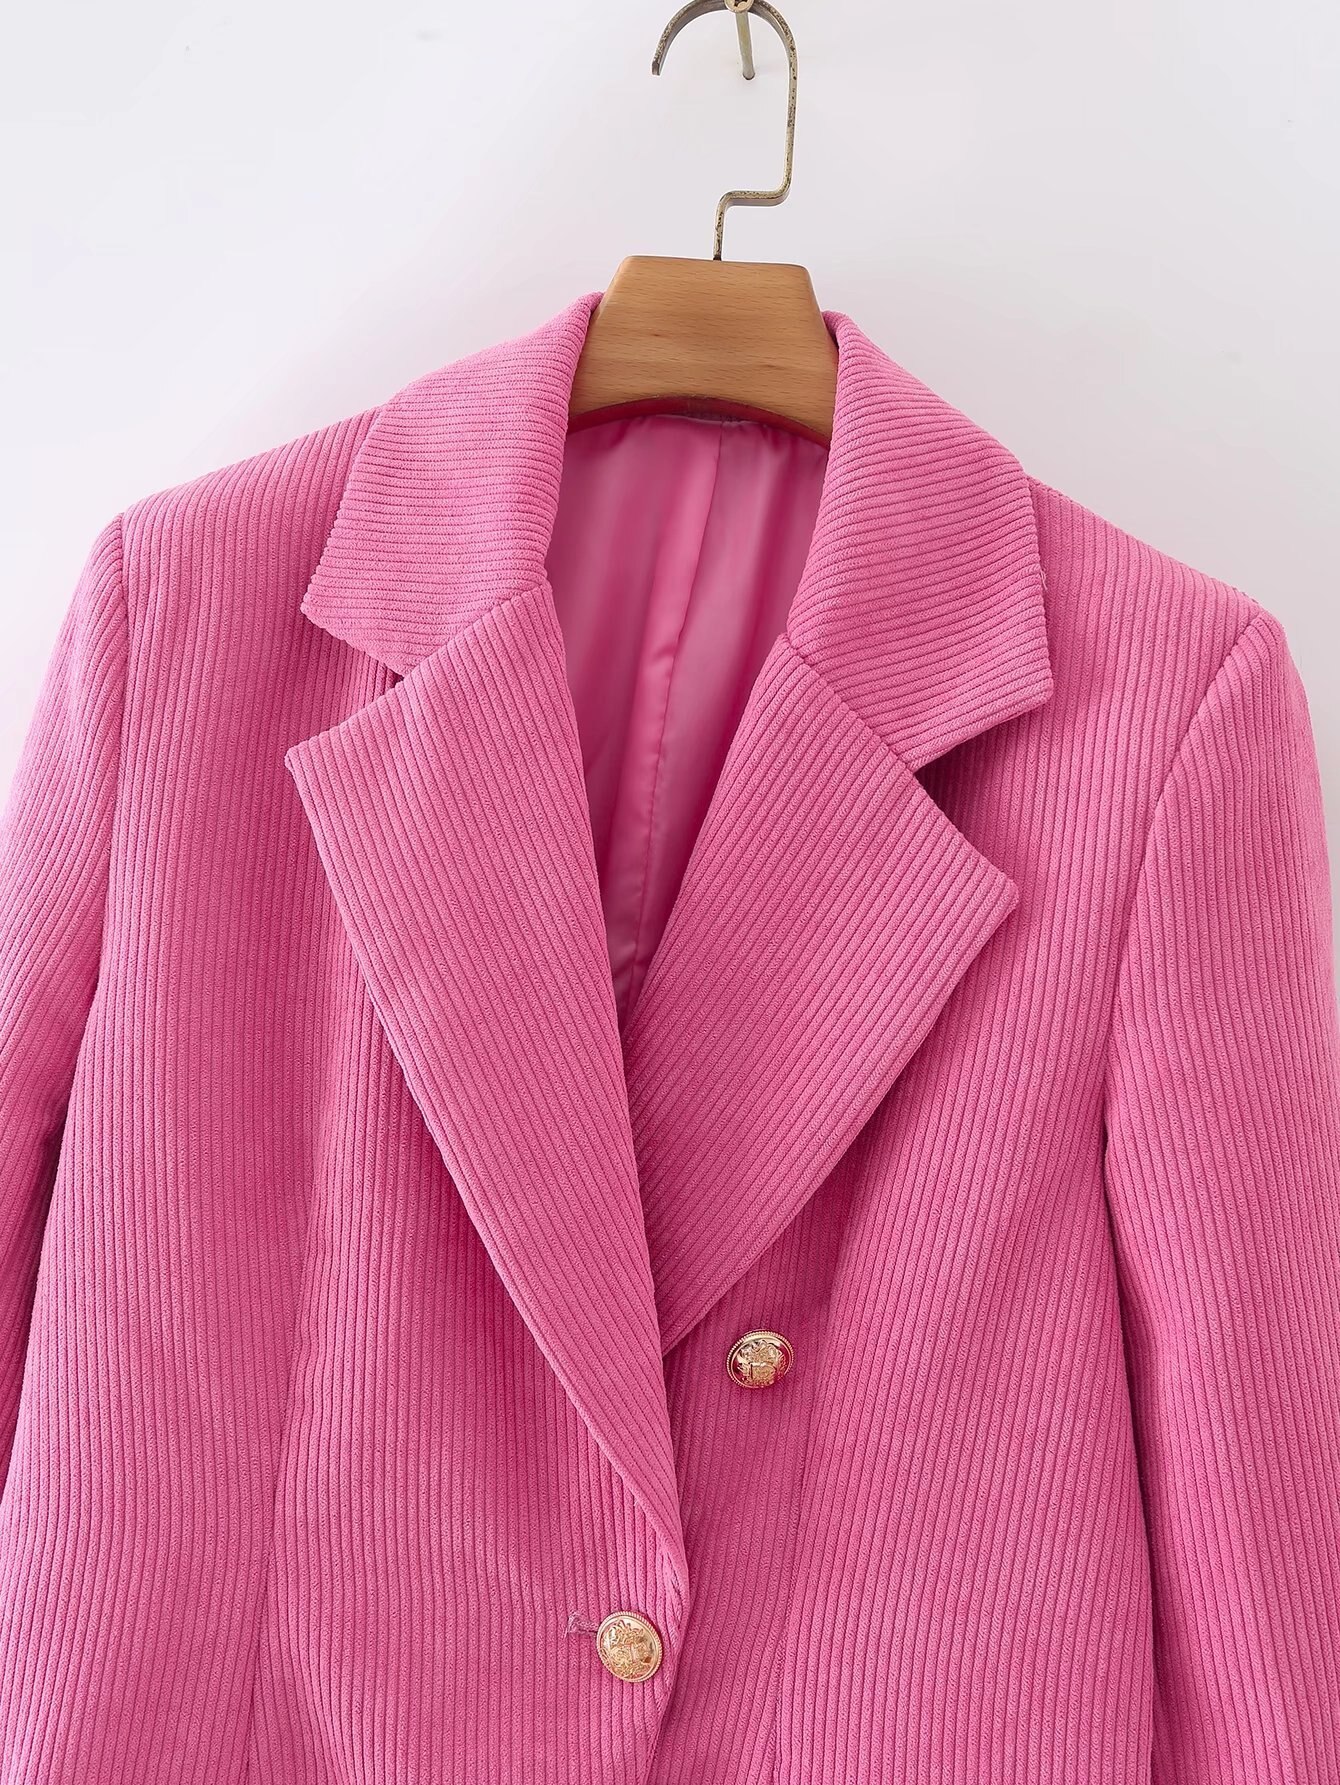 Blazer-en-velours-c-tel-pour-femmes-manteau-Vintage-manches-longues-avec-boutons-simples-poches-passepoil